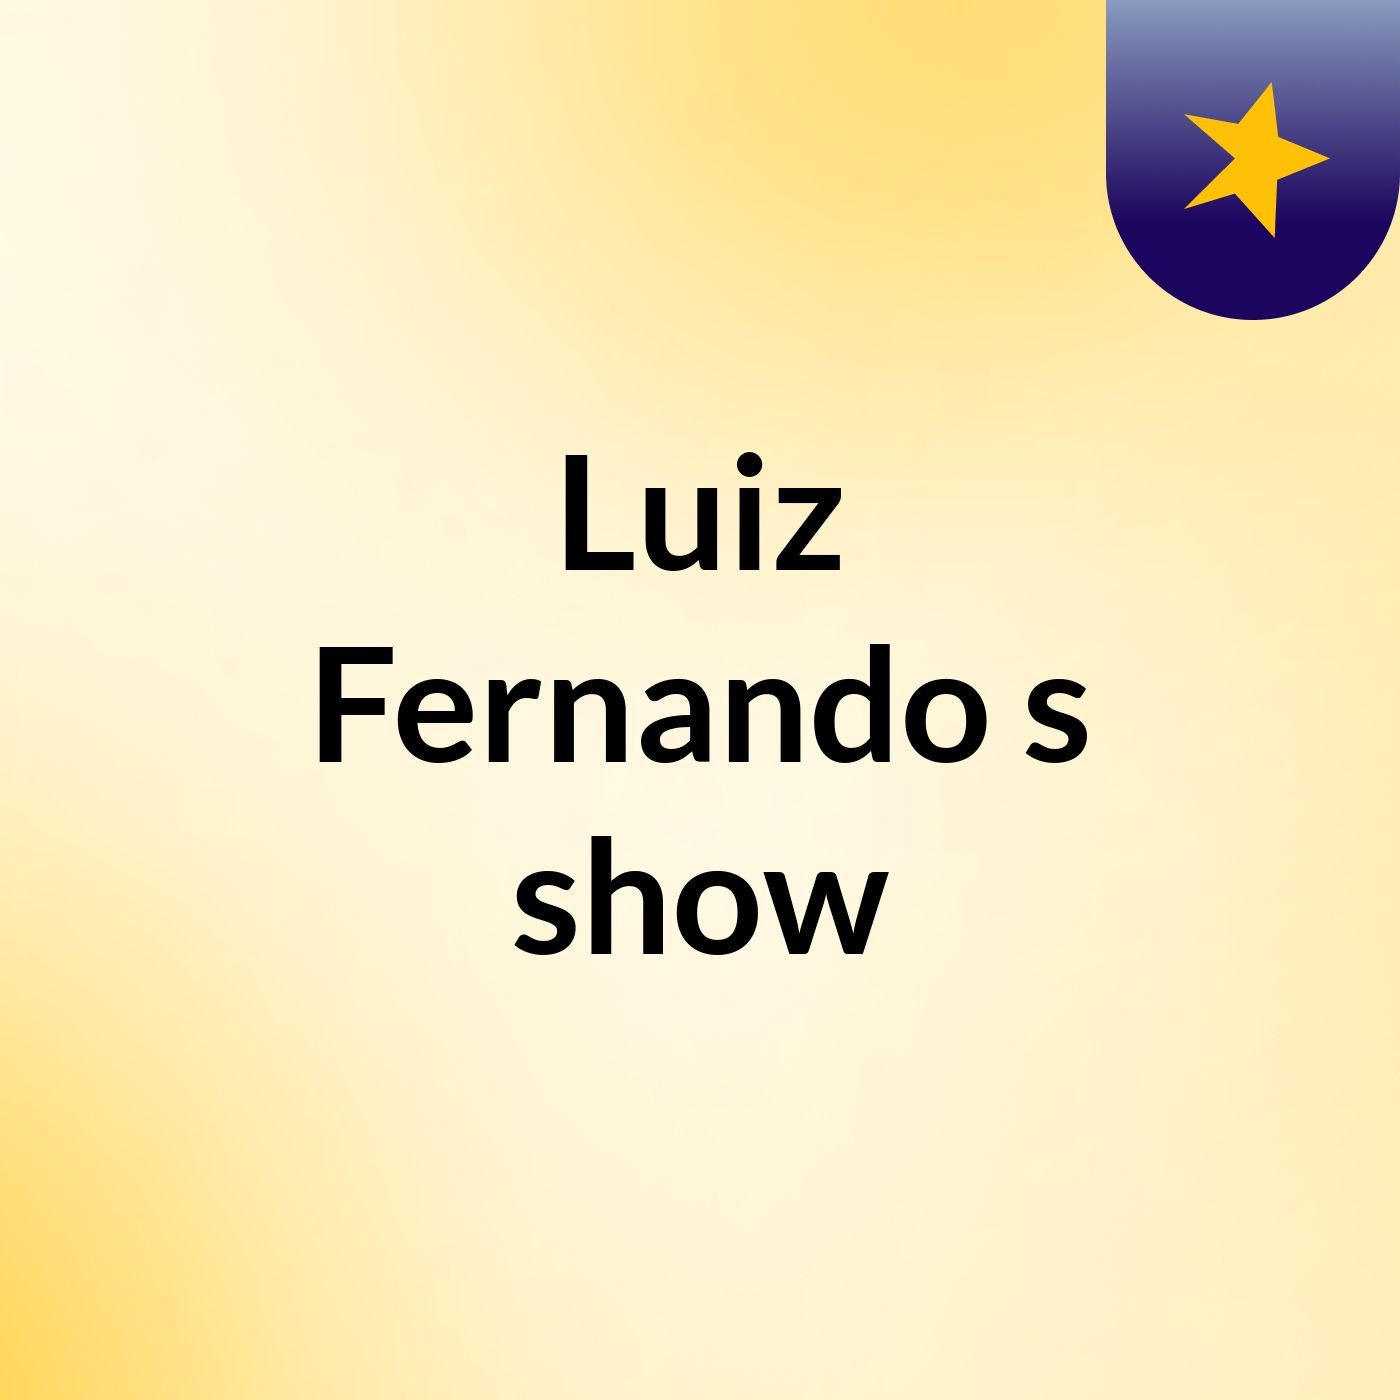 Luiz Fernando's show